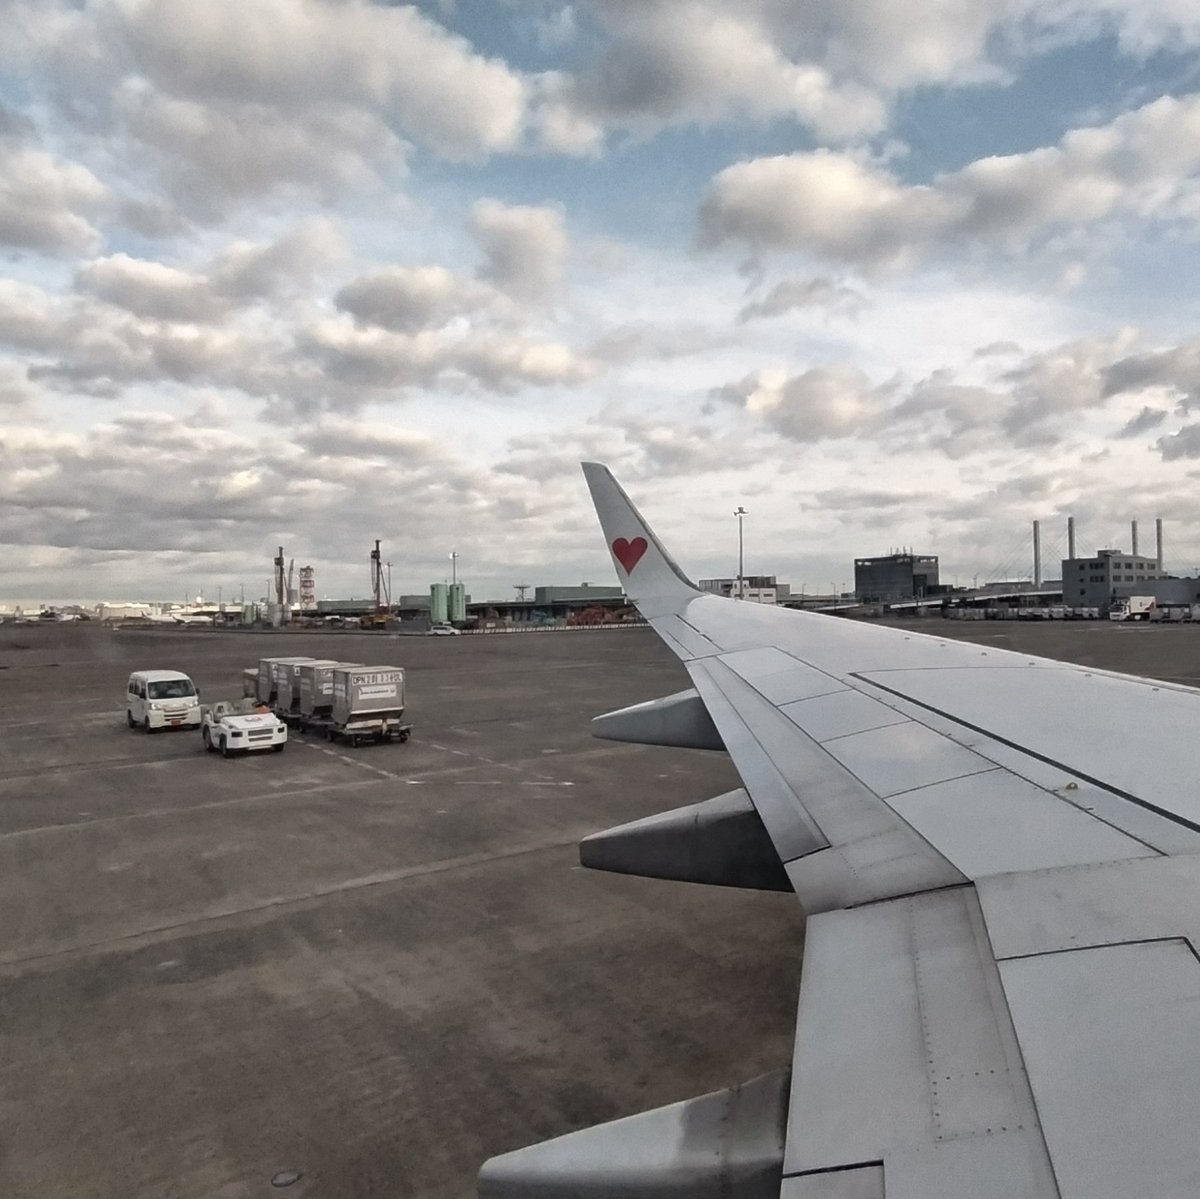 おはようございます。
安定のスカイマークで今から札幌へ向かいます。

BC/SKY705
Boring737-800:JA73NL
#スカイマーク
#skymark
#羽田空港